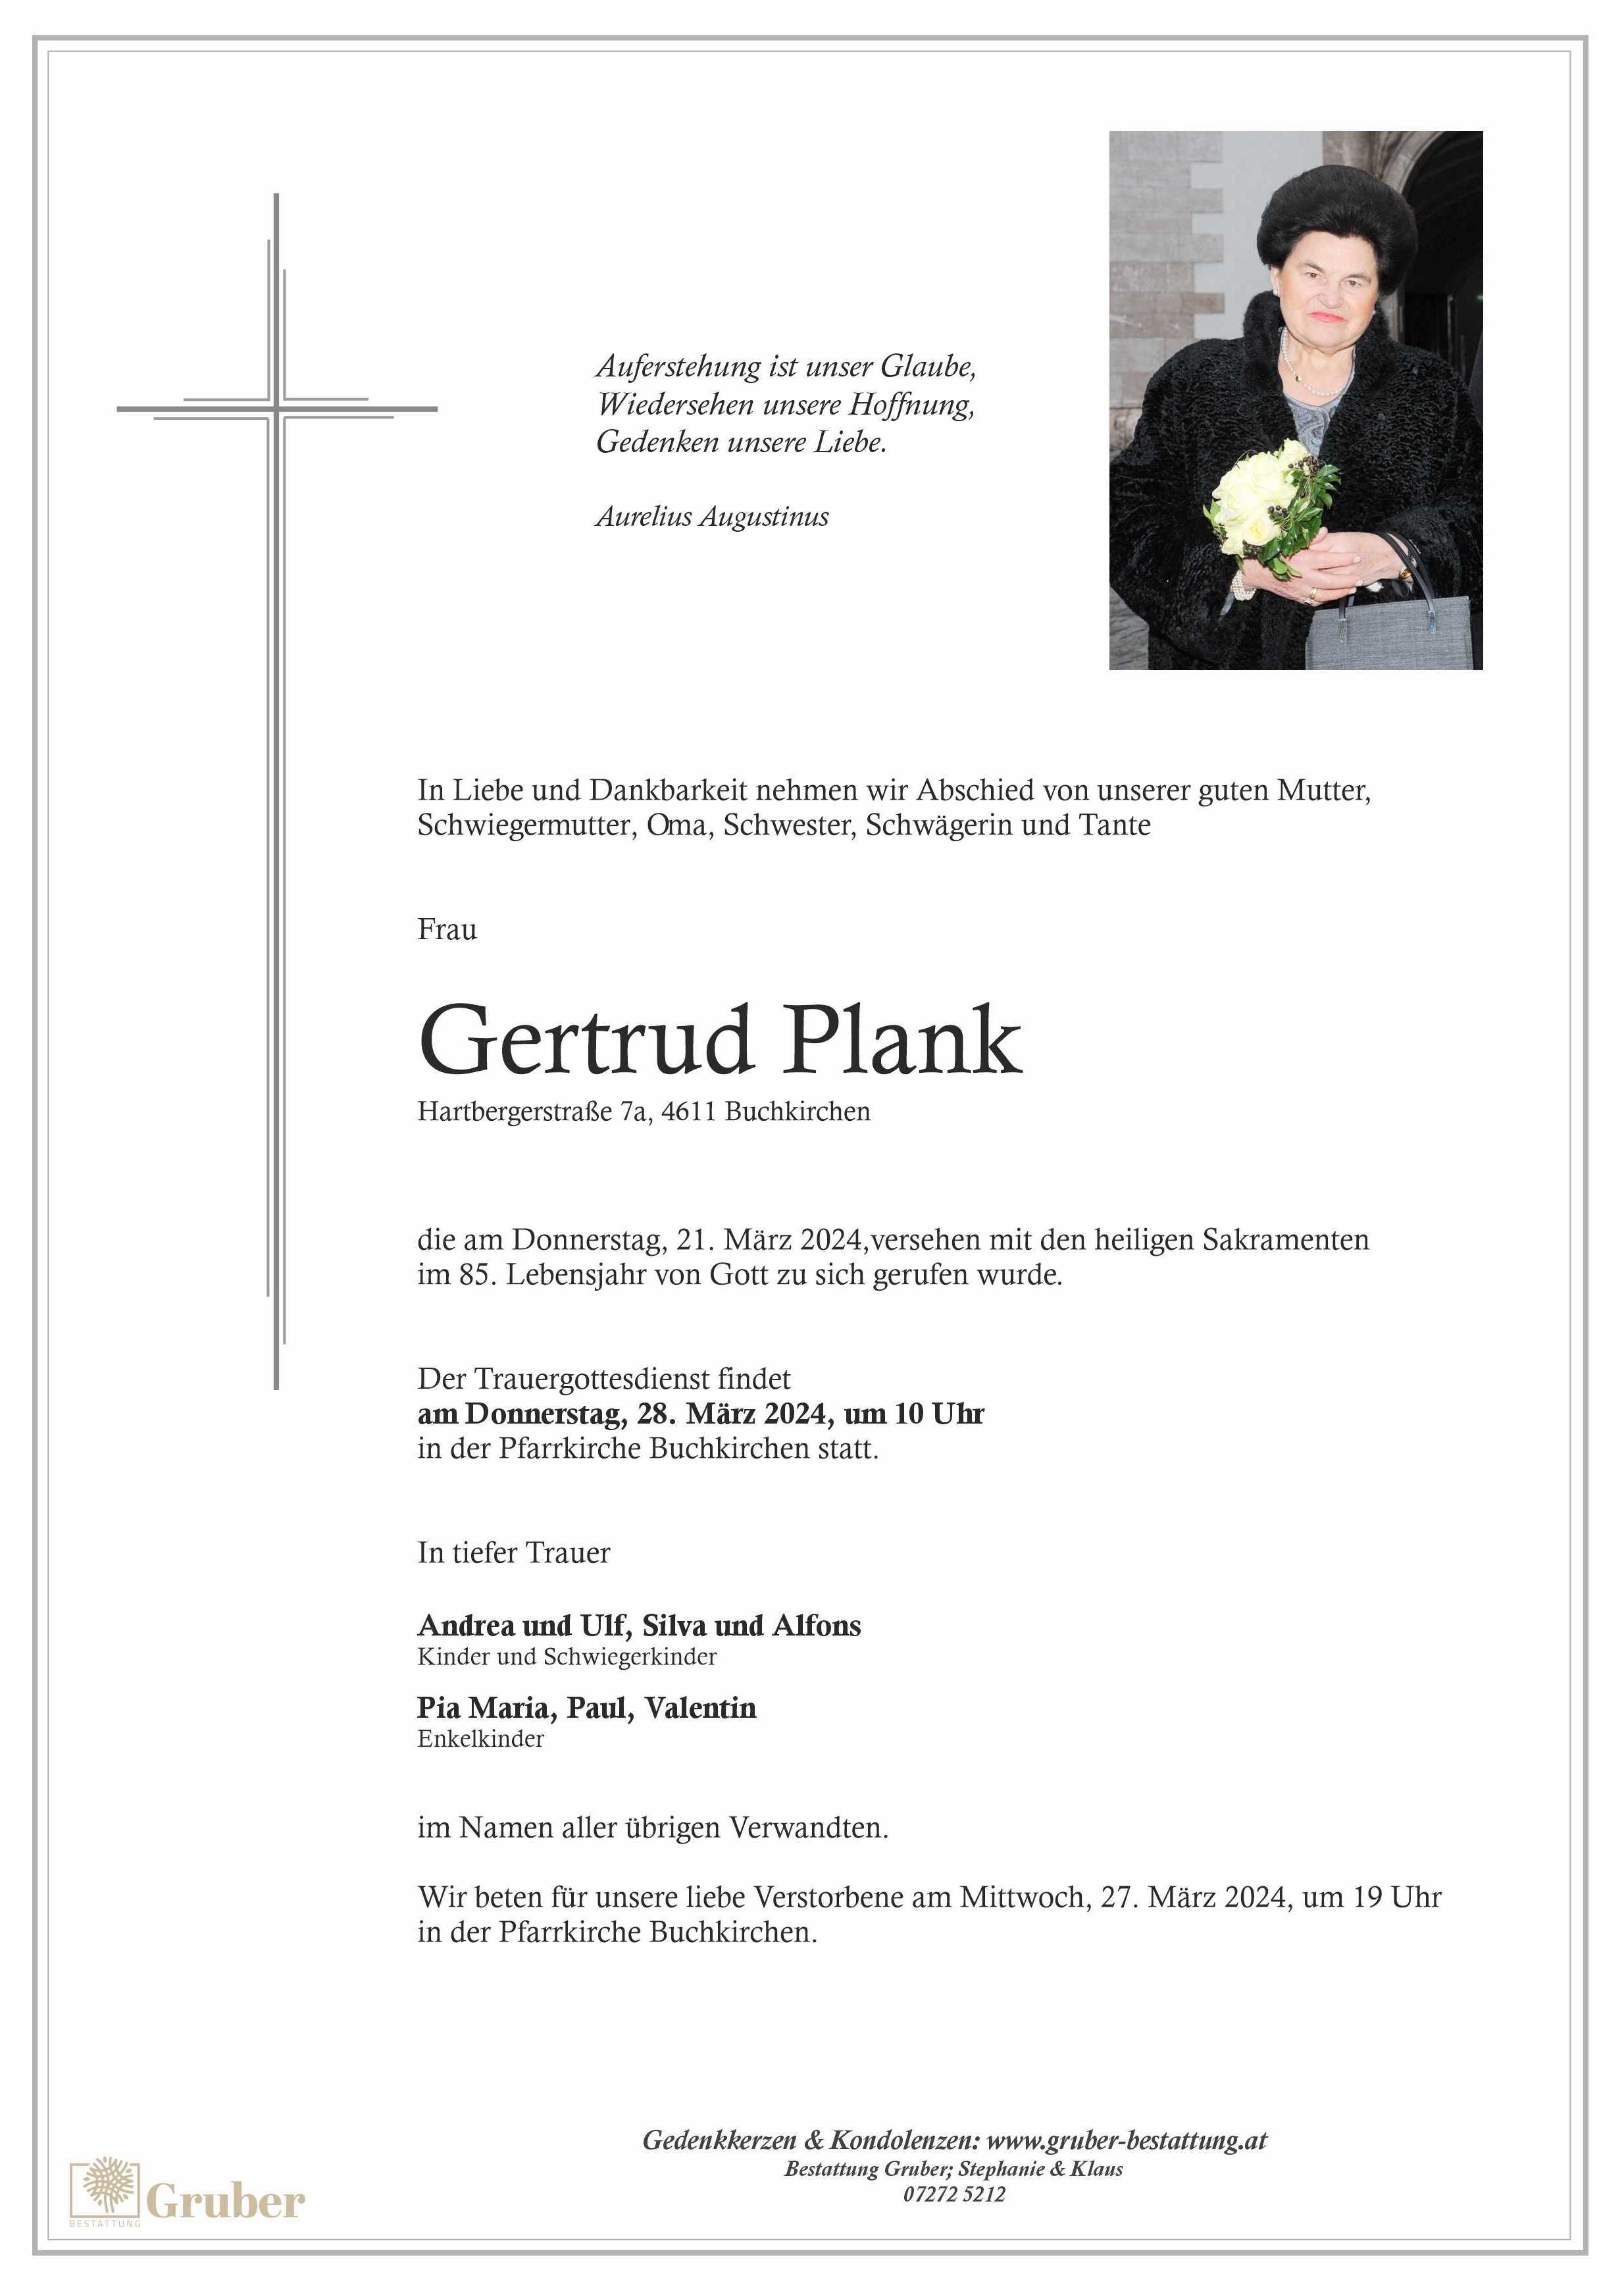 Gertrud Plank (Buchkirchen)